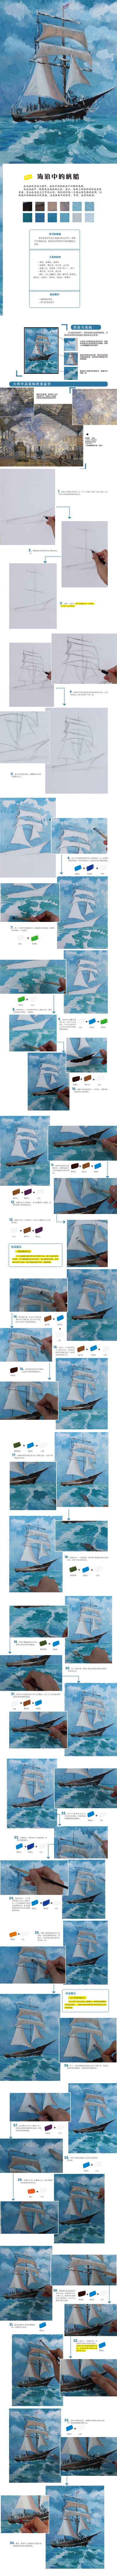 本案例摘自人民邮电出版社出版的《油画风景教程（修订版））》http://product.dangdang.com/24181685.html